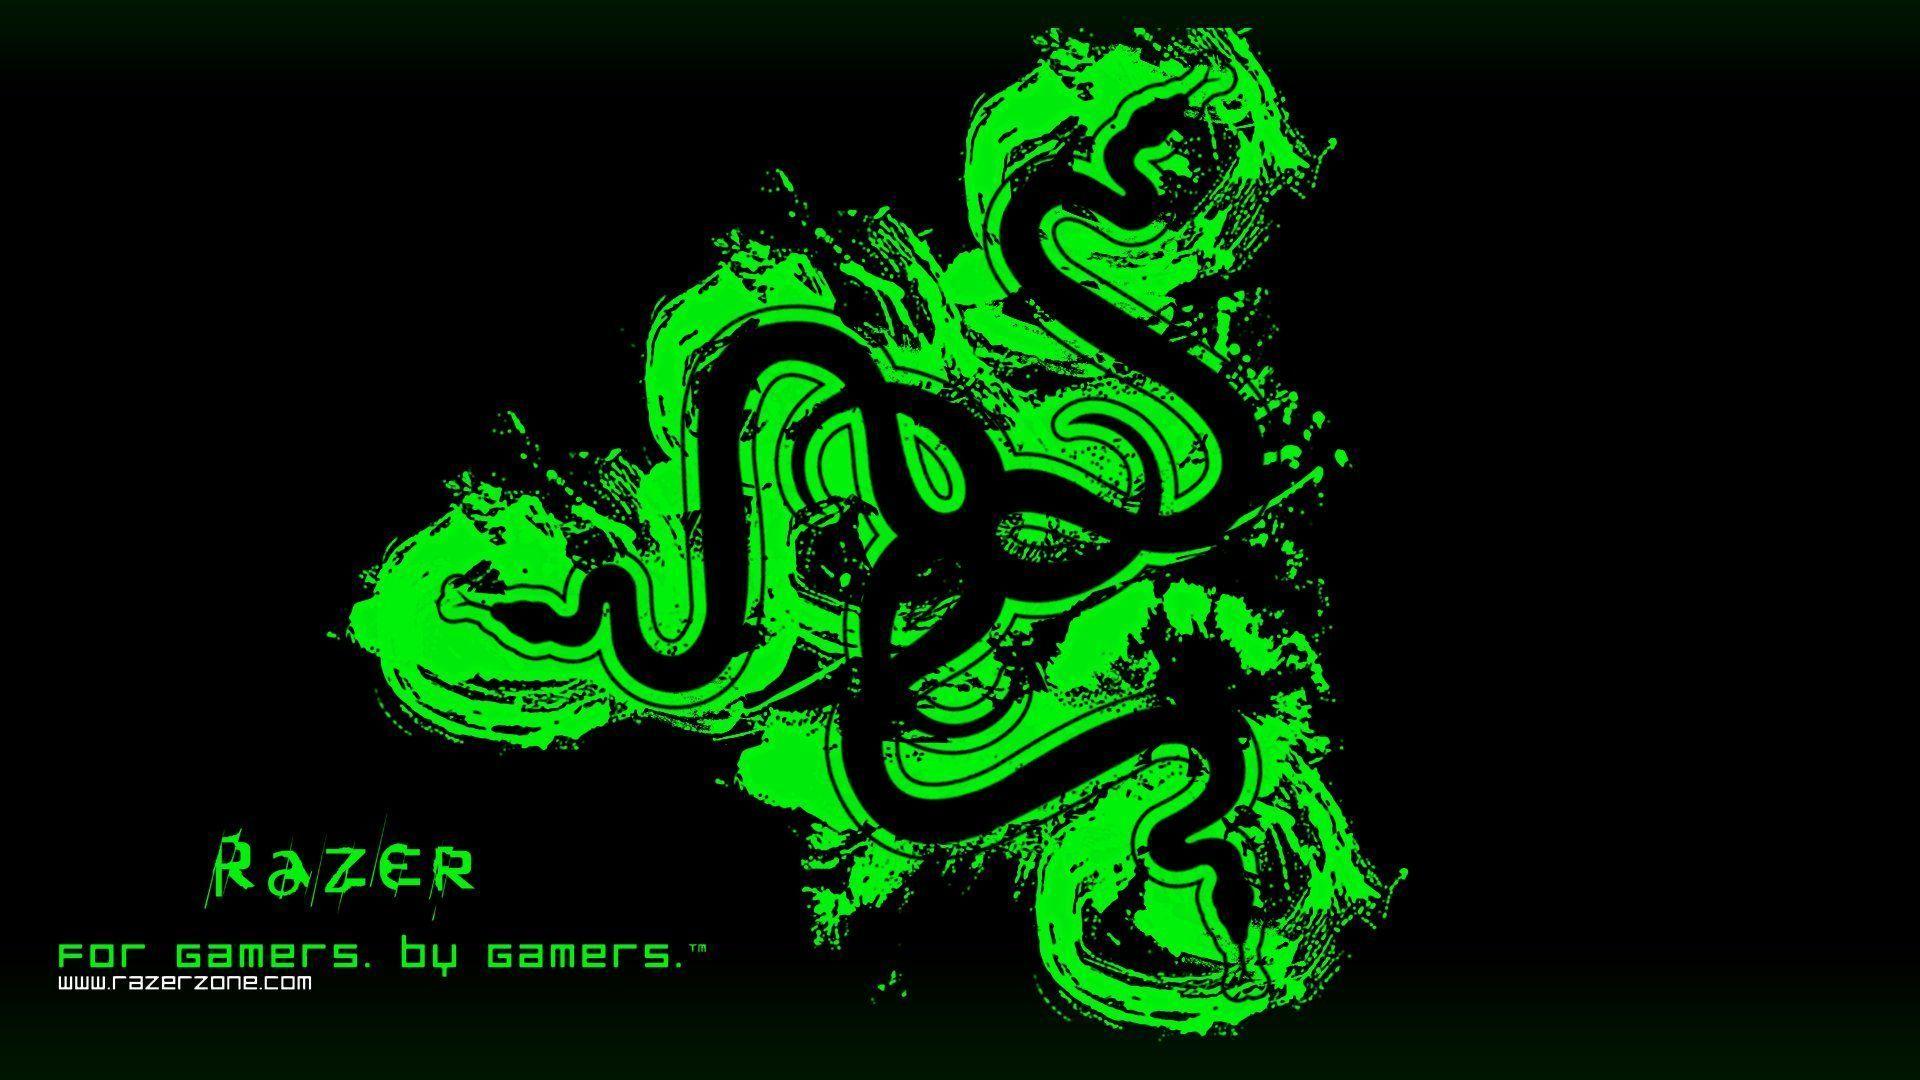 RAZER GAMING computer game (10) wallpaperx1080